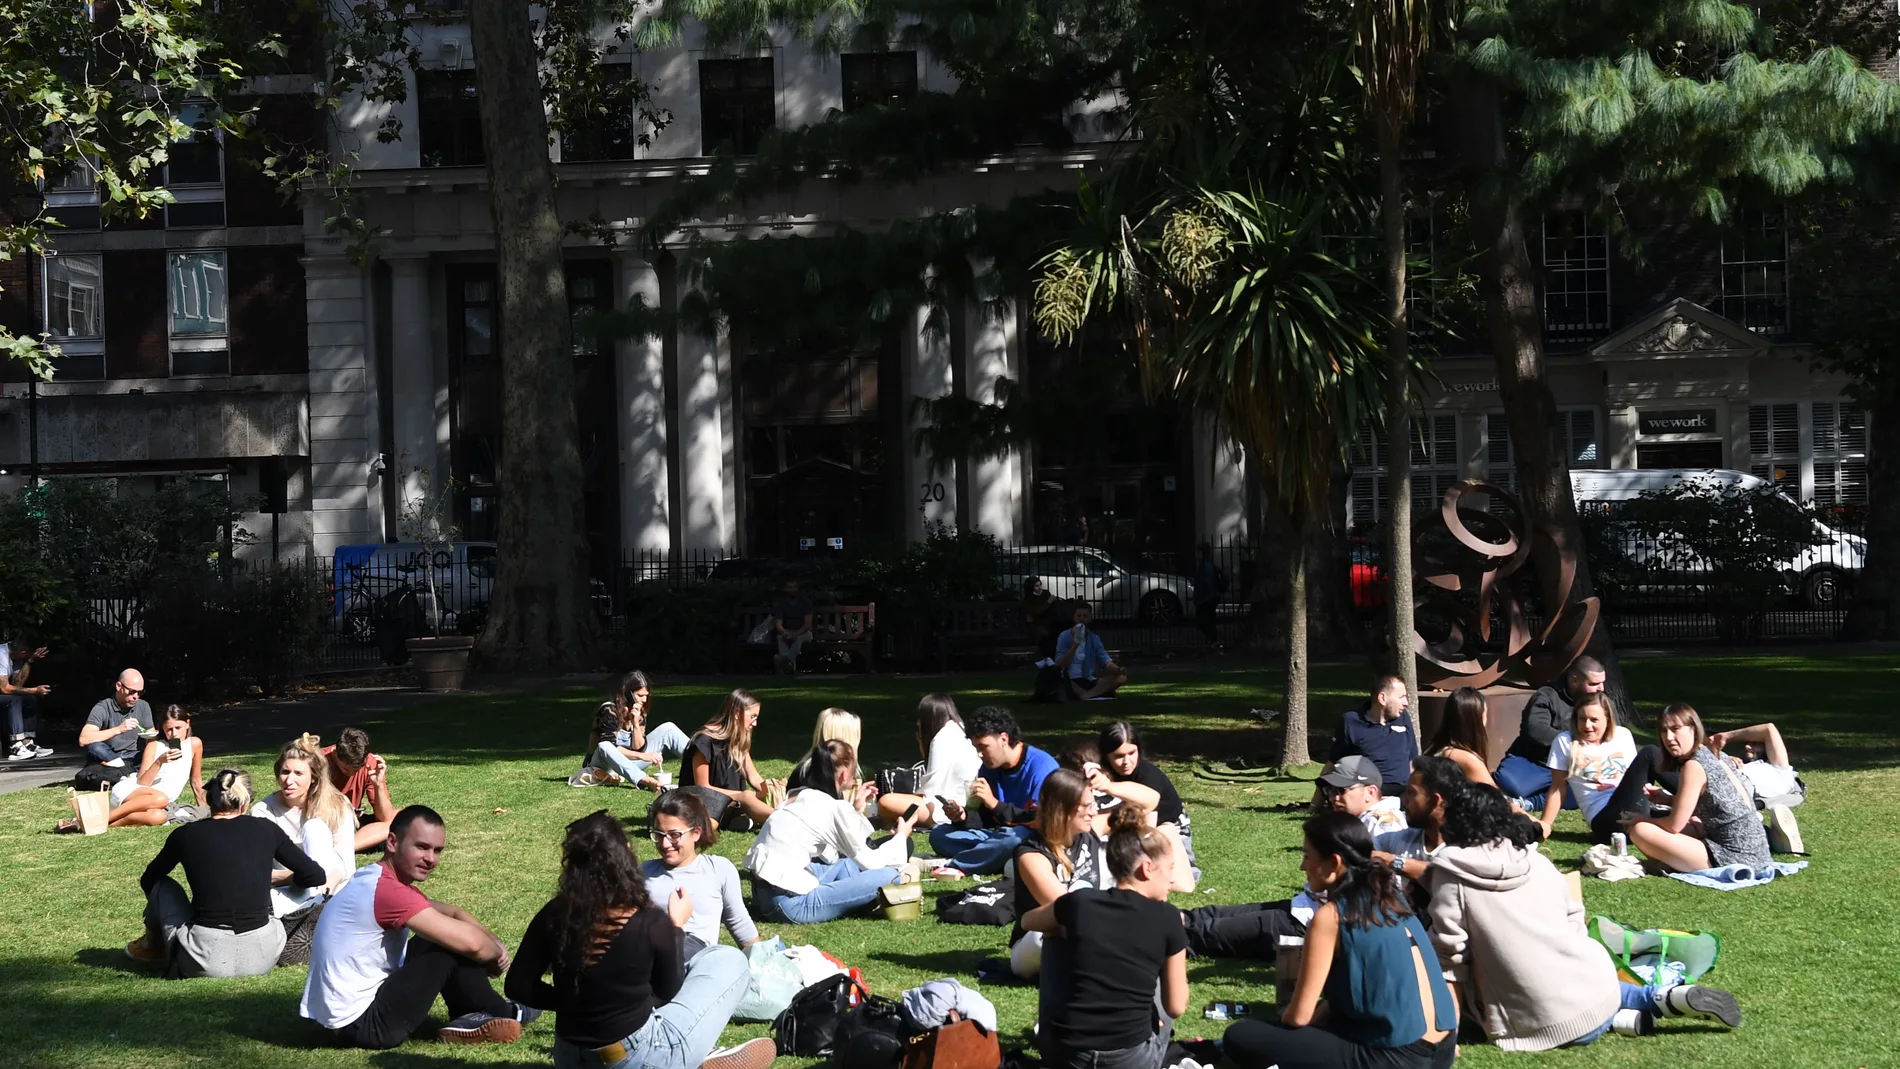 Gente sentada en la plaza del Soho en Londres sin respetar las distancias sociales